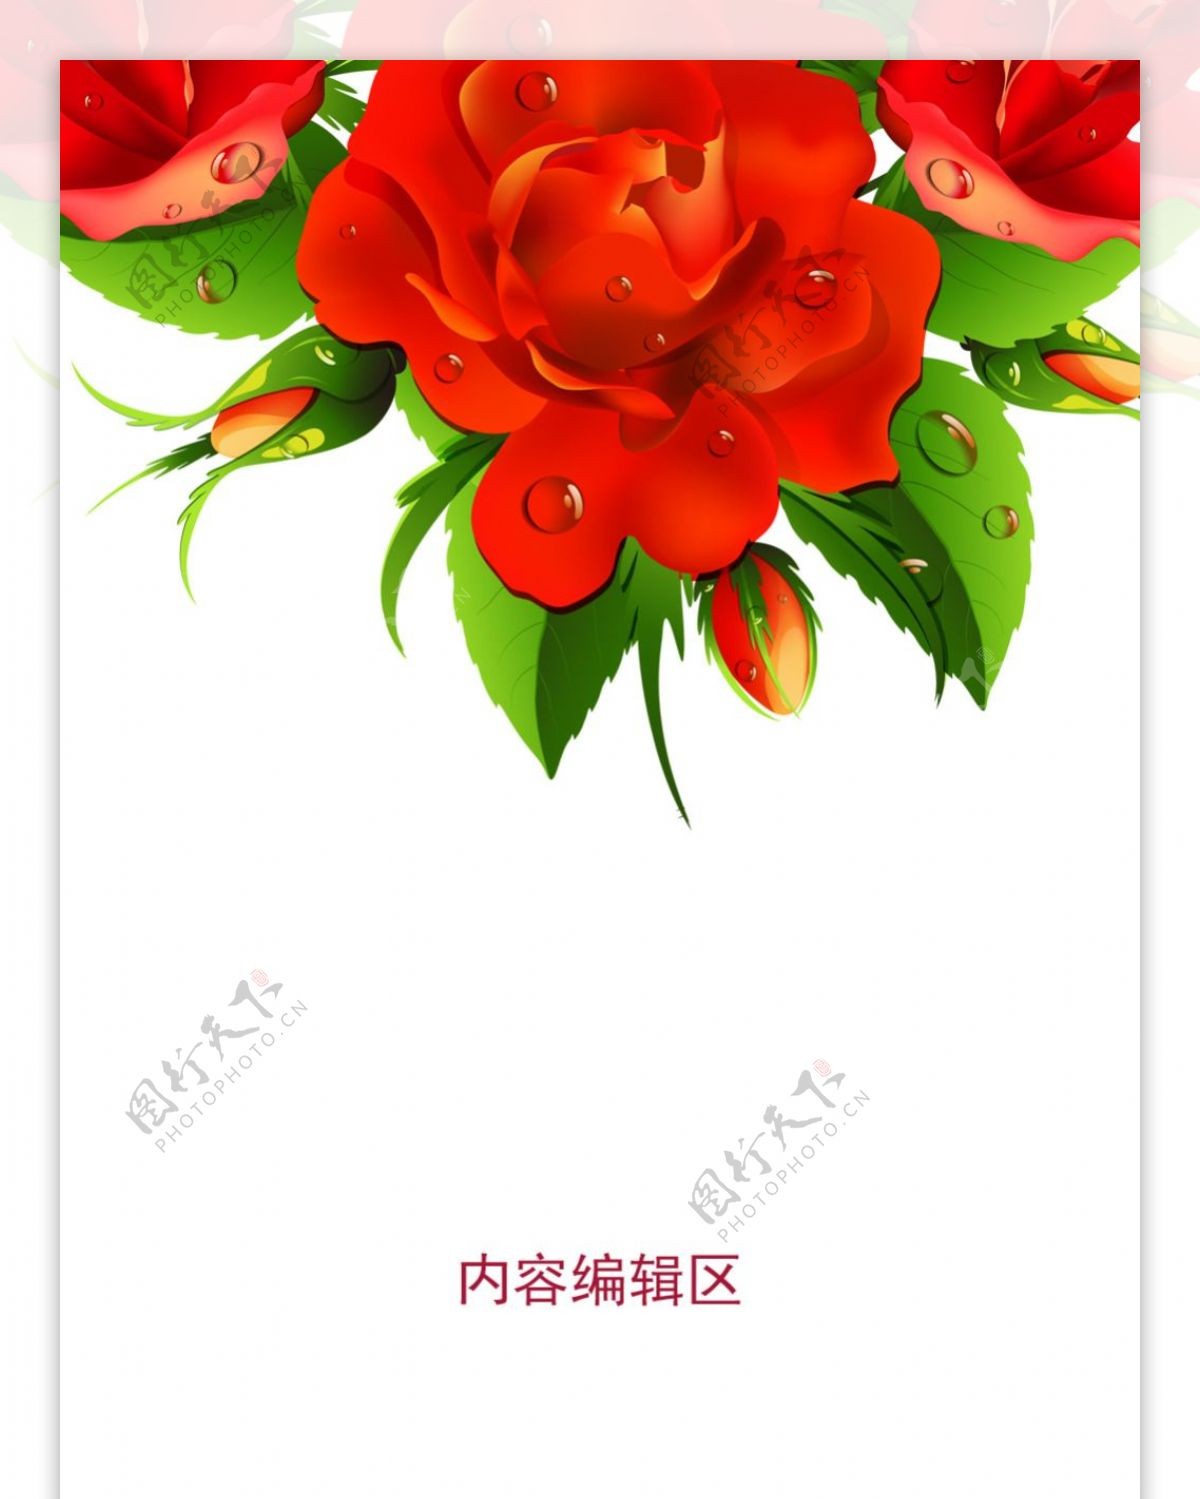 精美玫瑰花设计素材海报展架画面素材